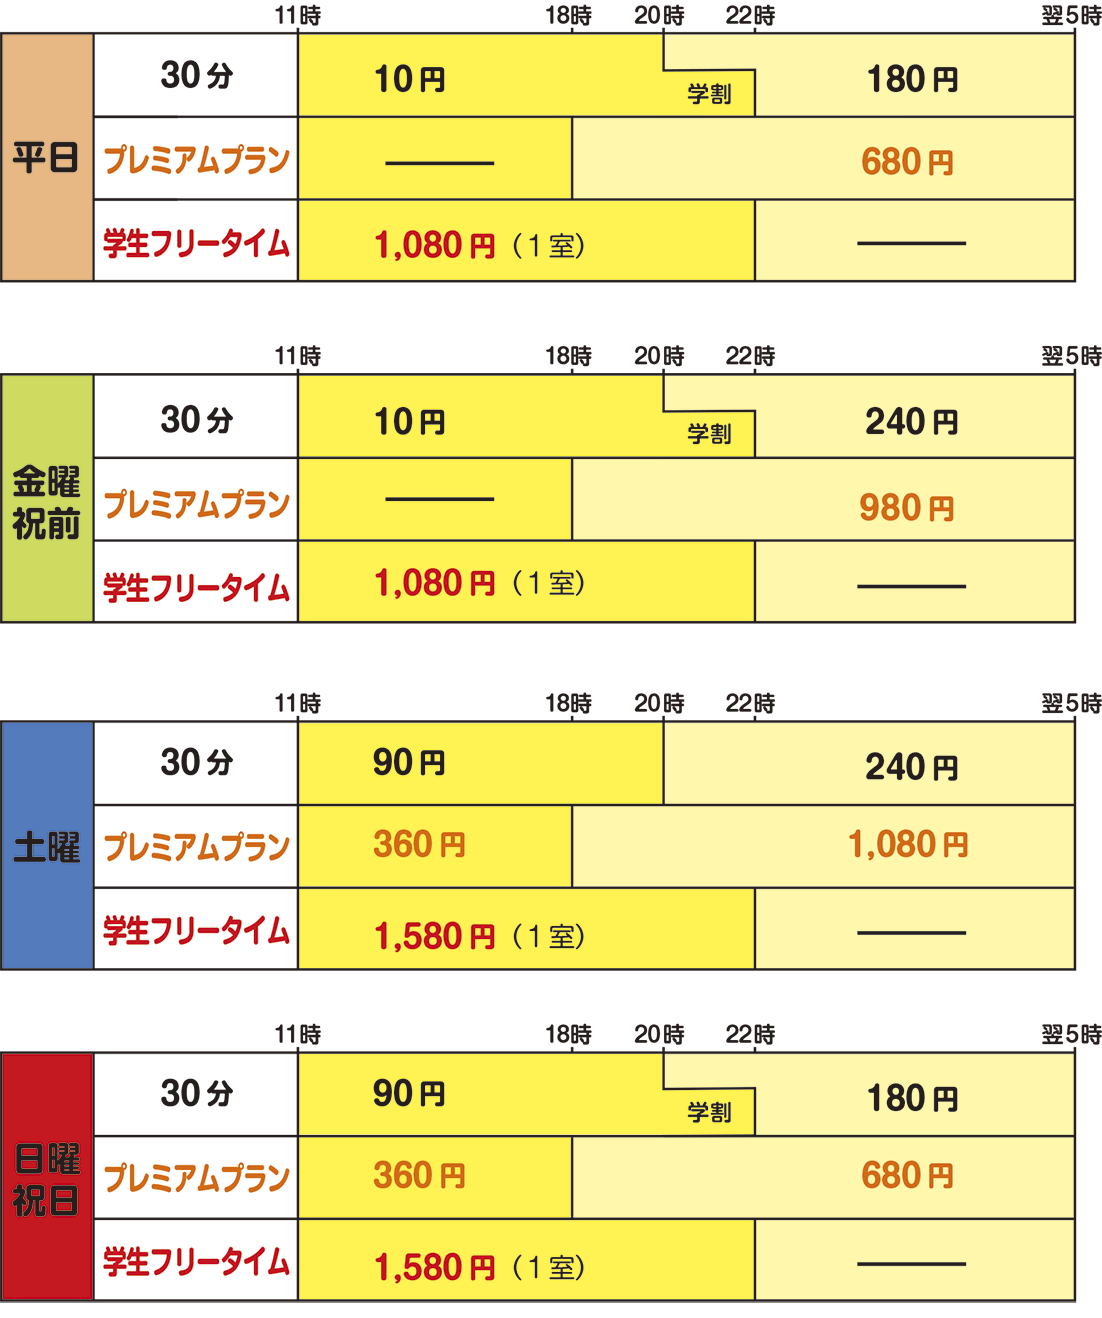 中島店のカラオケ料金表